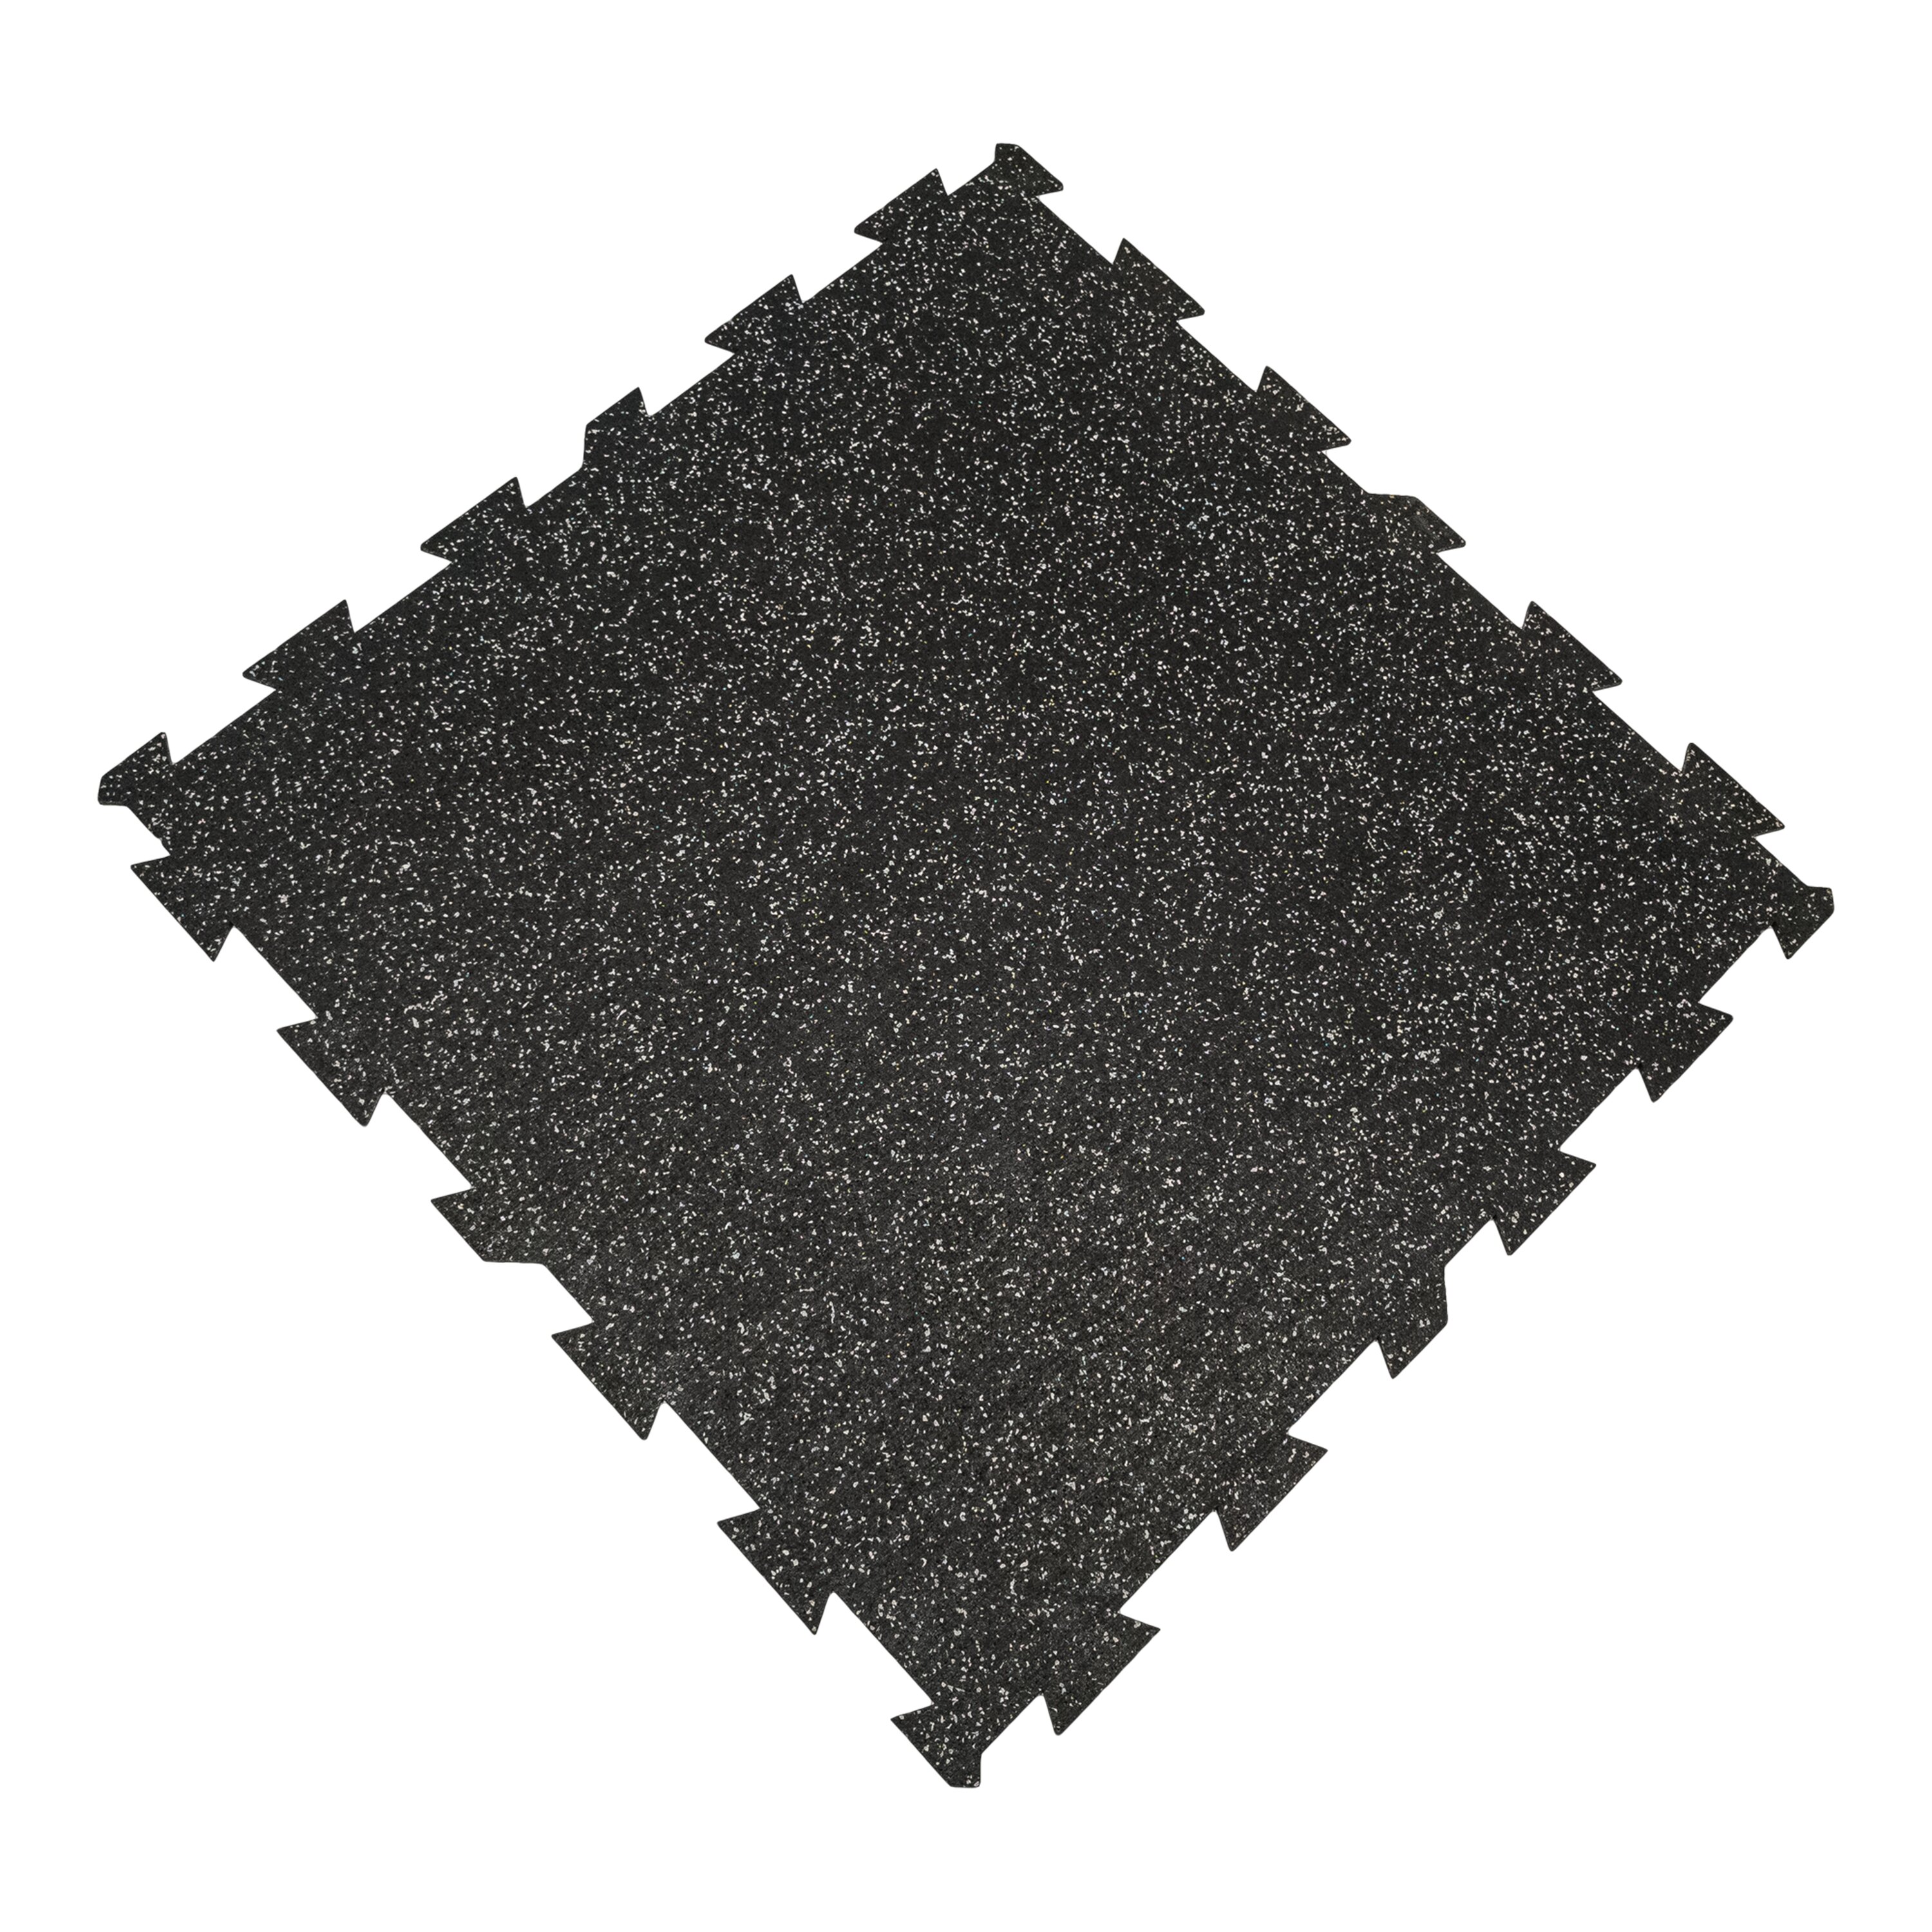 Čierno-šedá gumová modulová puzzle dlažba (stred) FLOMA FitFlo SF1050 - dĺžka 100 cm, šírka 100 cm, výška 1 cm